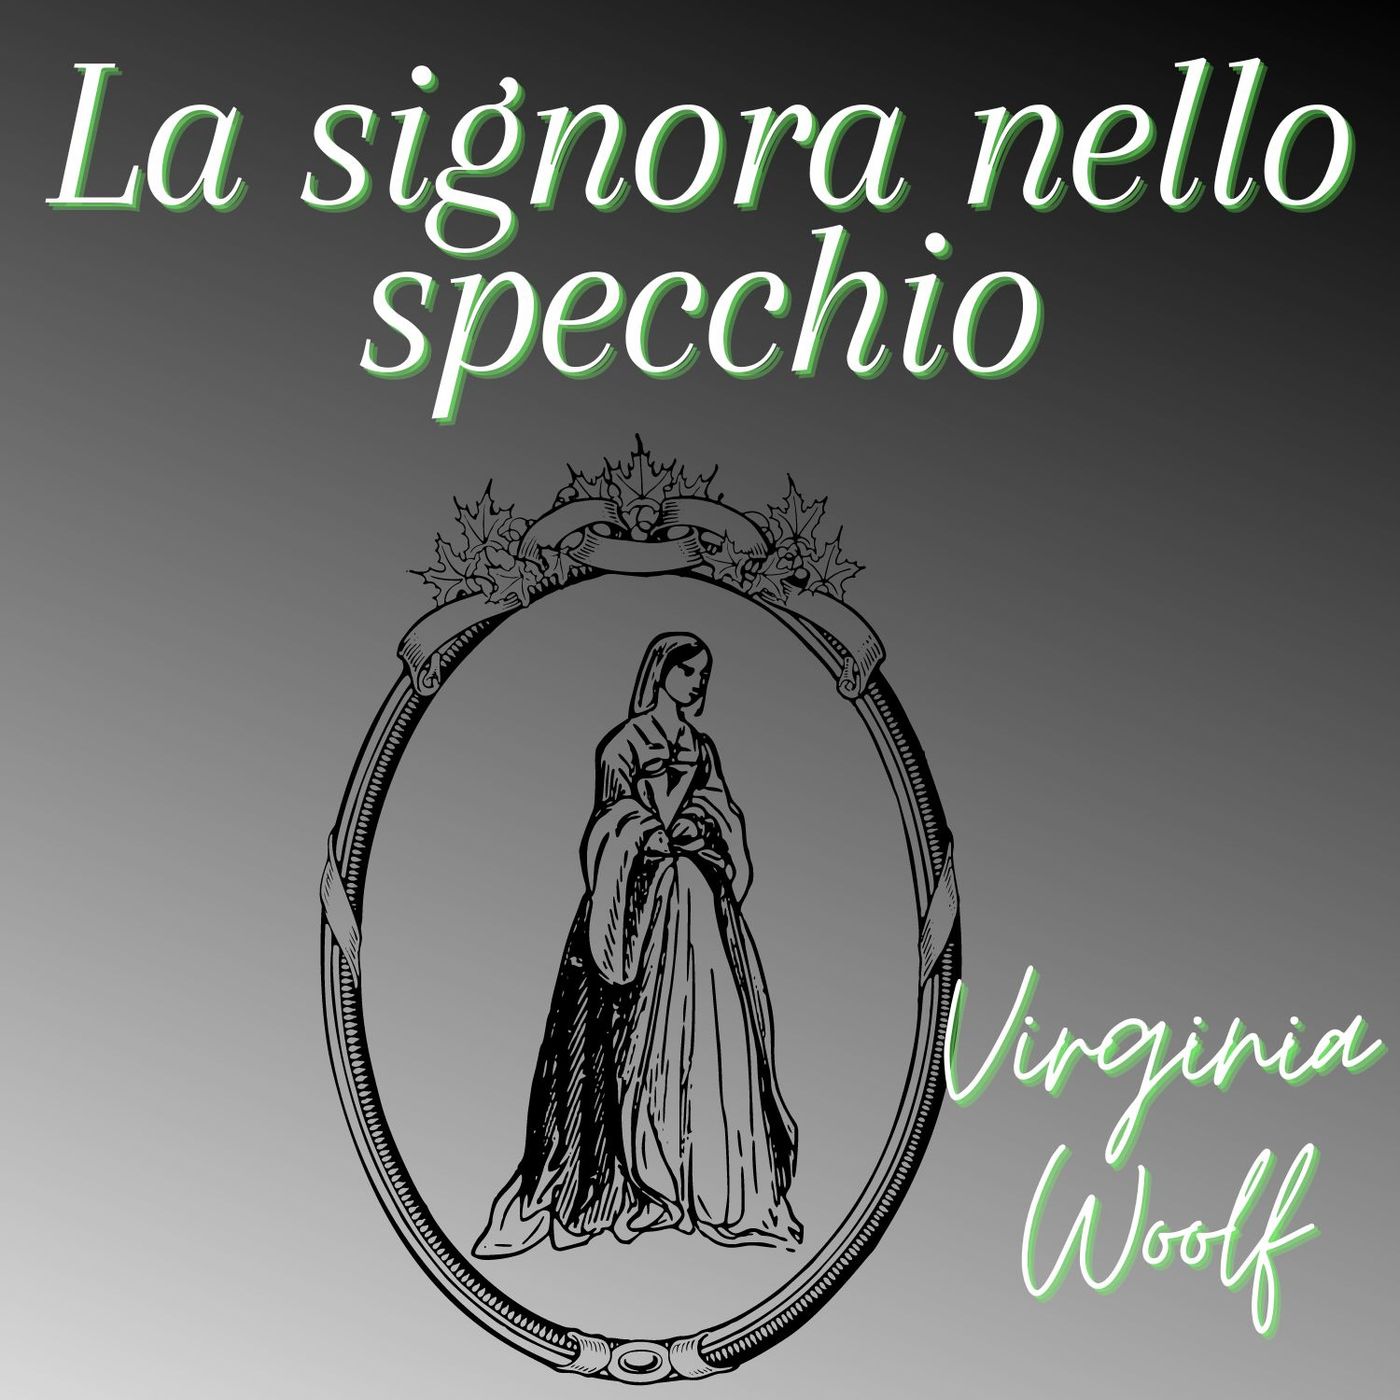 La signora nello specchio - Virginia Woolf